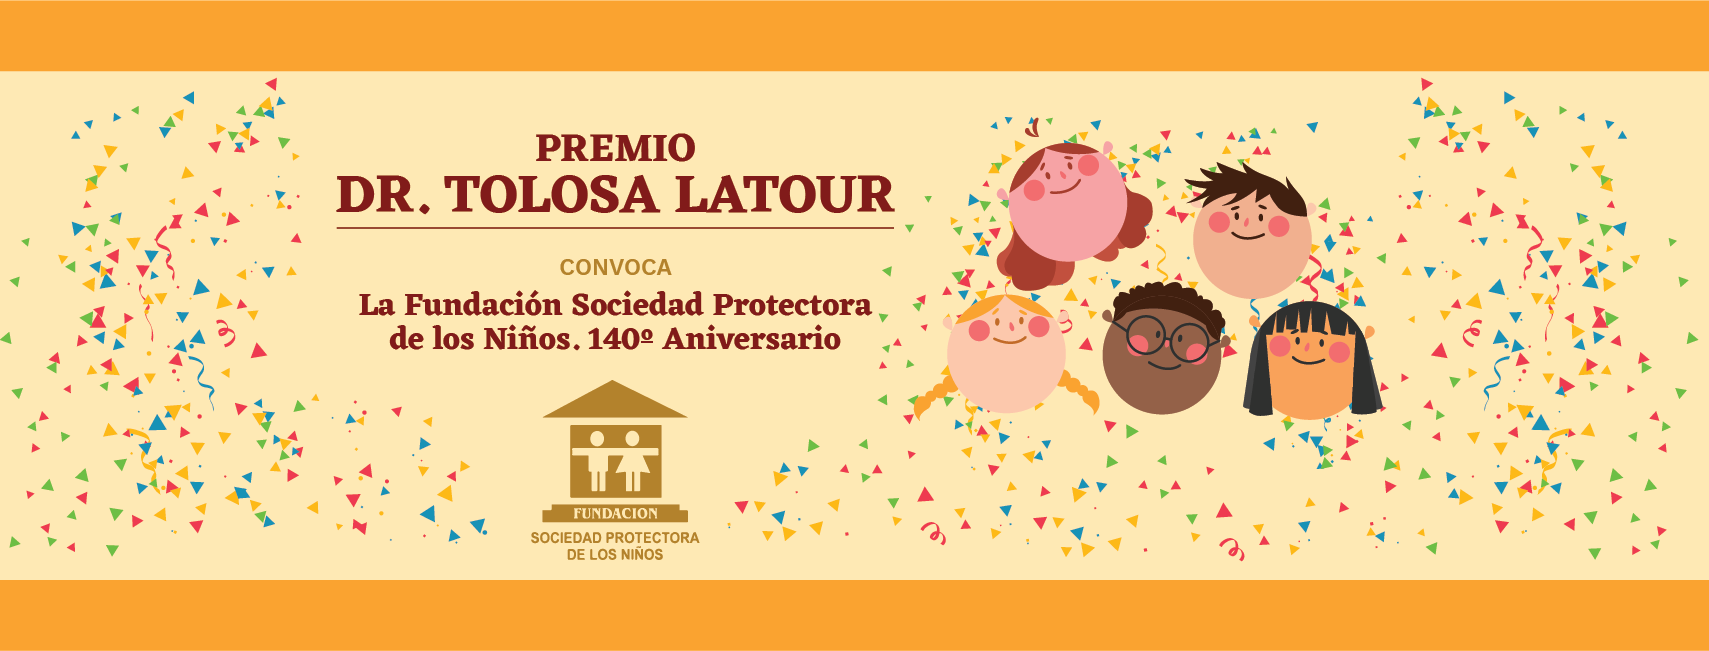 Premios Dr. Tolosa Latour por el reconocimiento de la labor de protección a la infancia y adolescencia